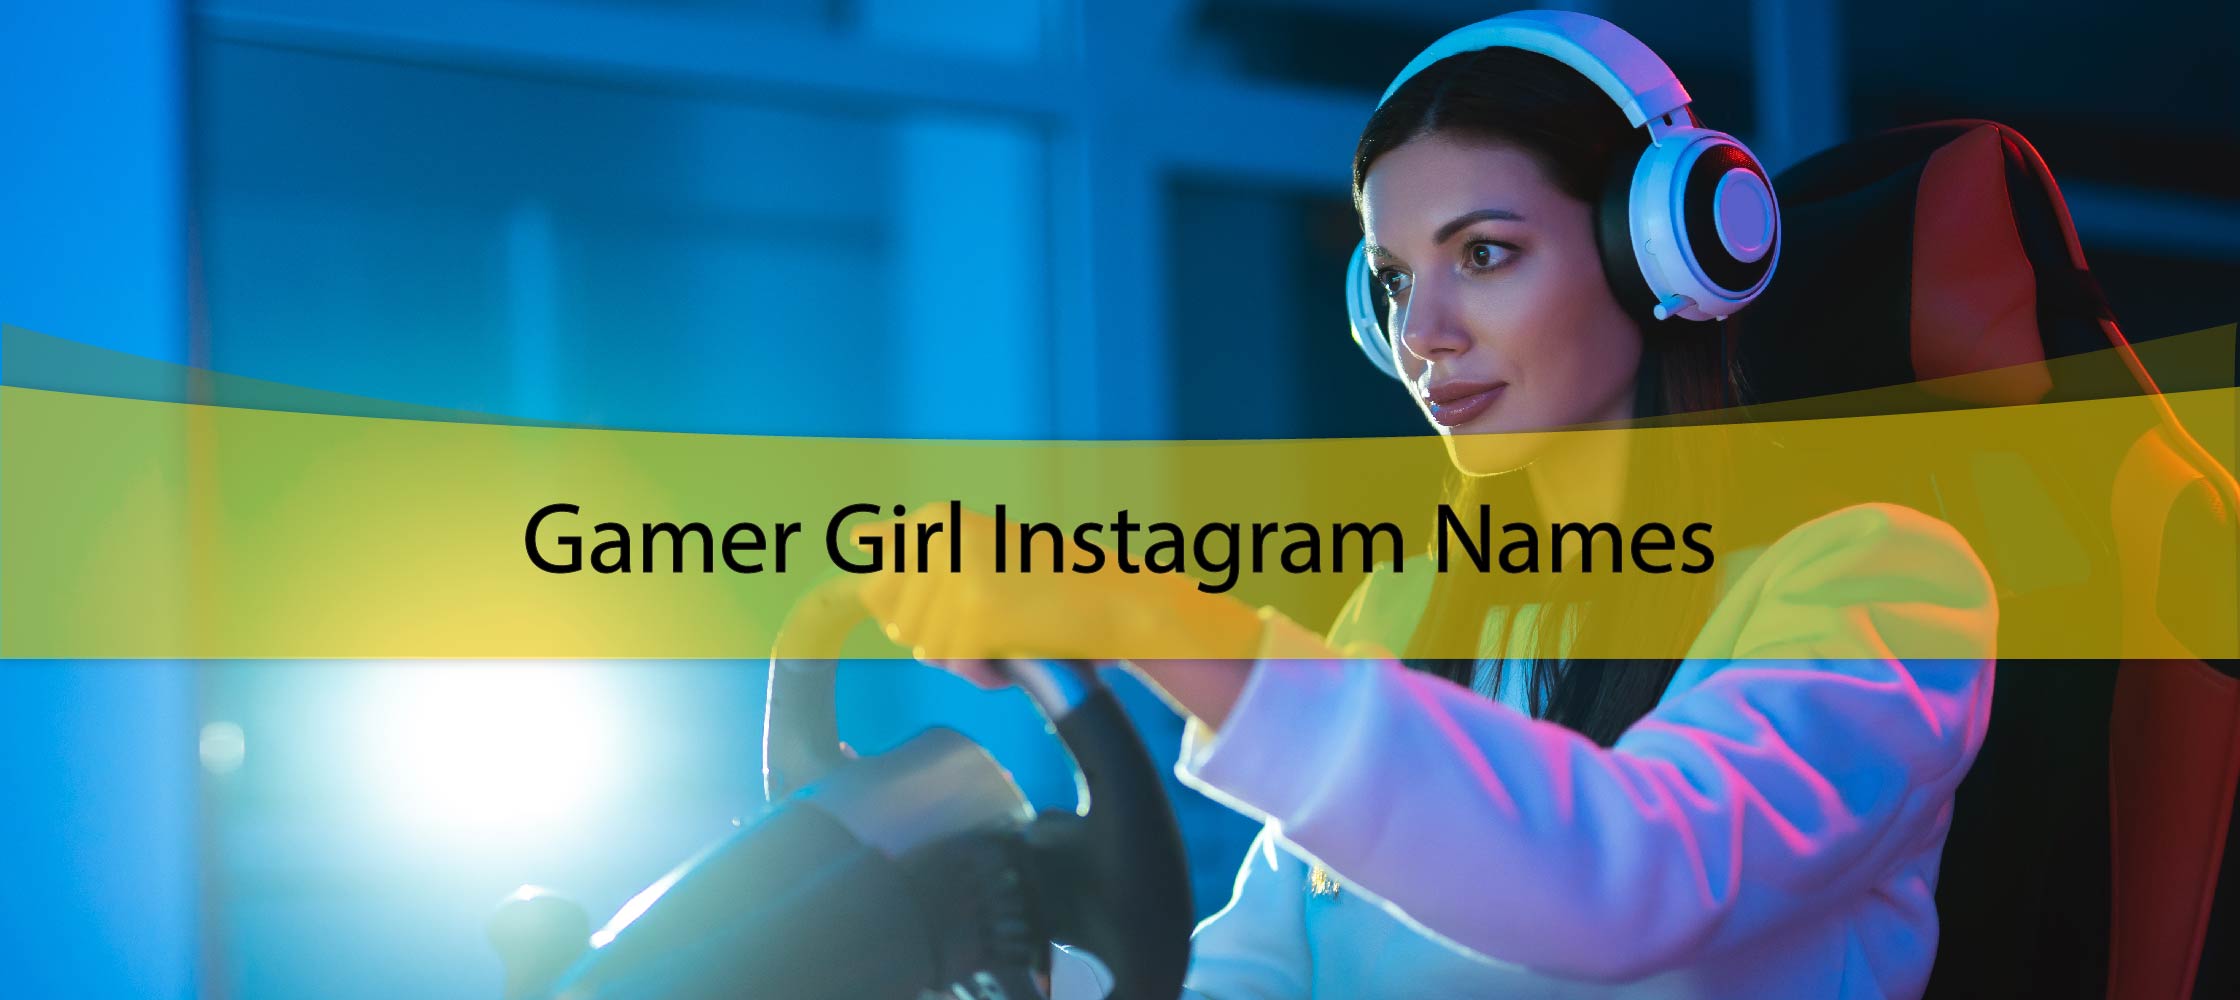 Gamer Girl Instagram Names